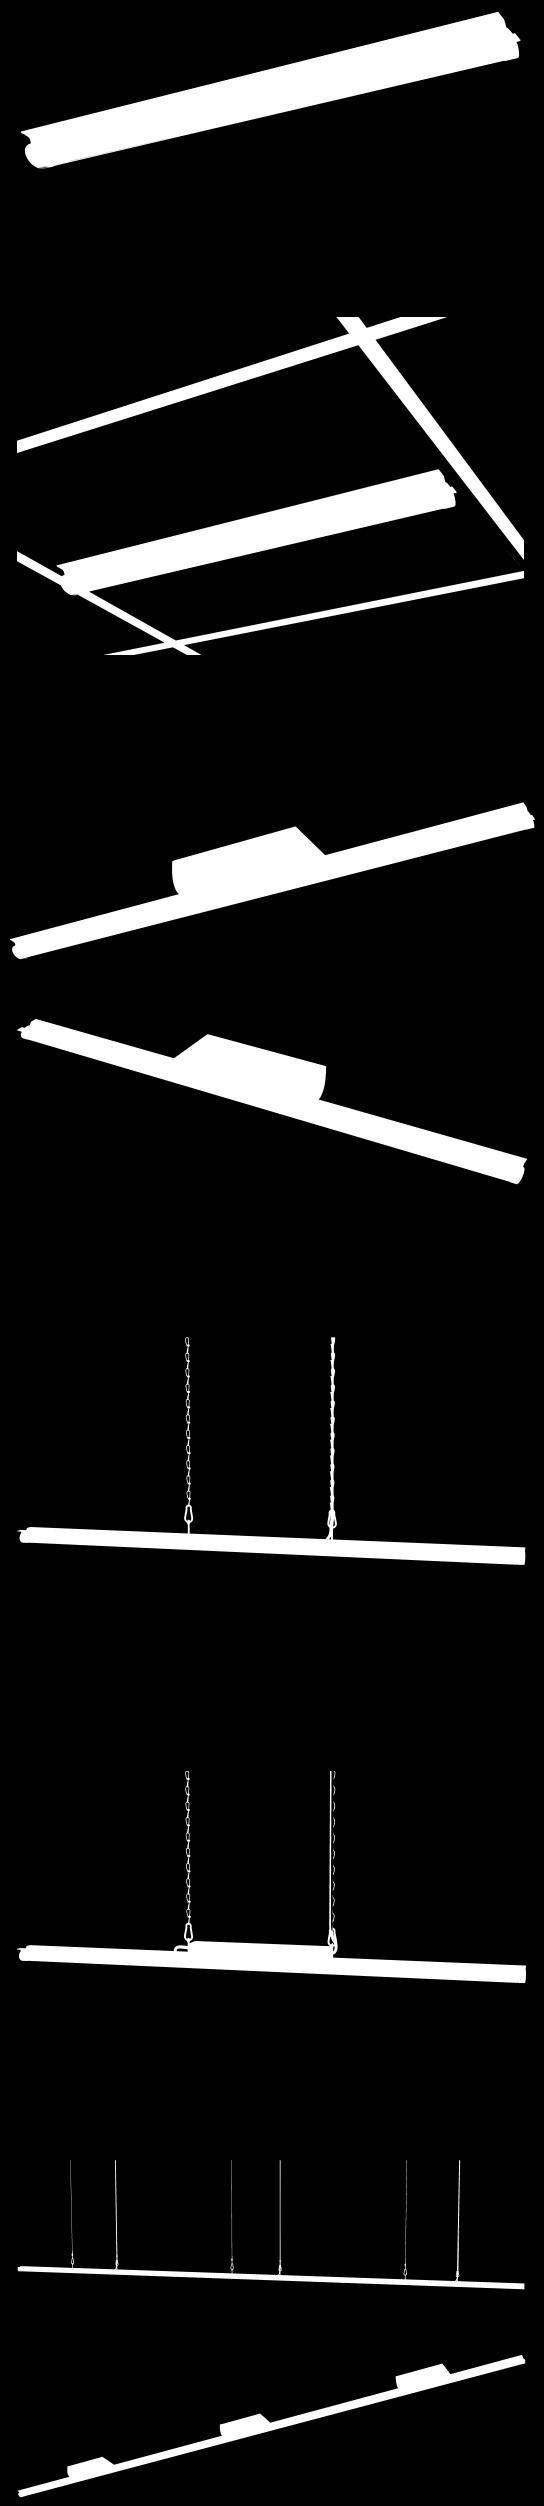 Způsoby zavěšení 1. Na strop, scontroller umístěn libovolně vzdáleně Montážní příslušenství NH 2. Na kazetový sádrokartonový strop, s Controller umístěn v podhledu Montážní příslušenství SP 3.